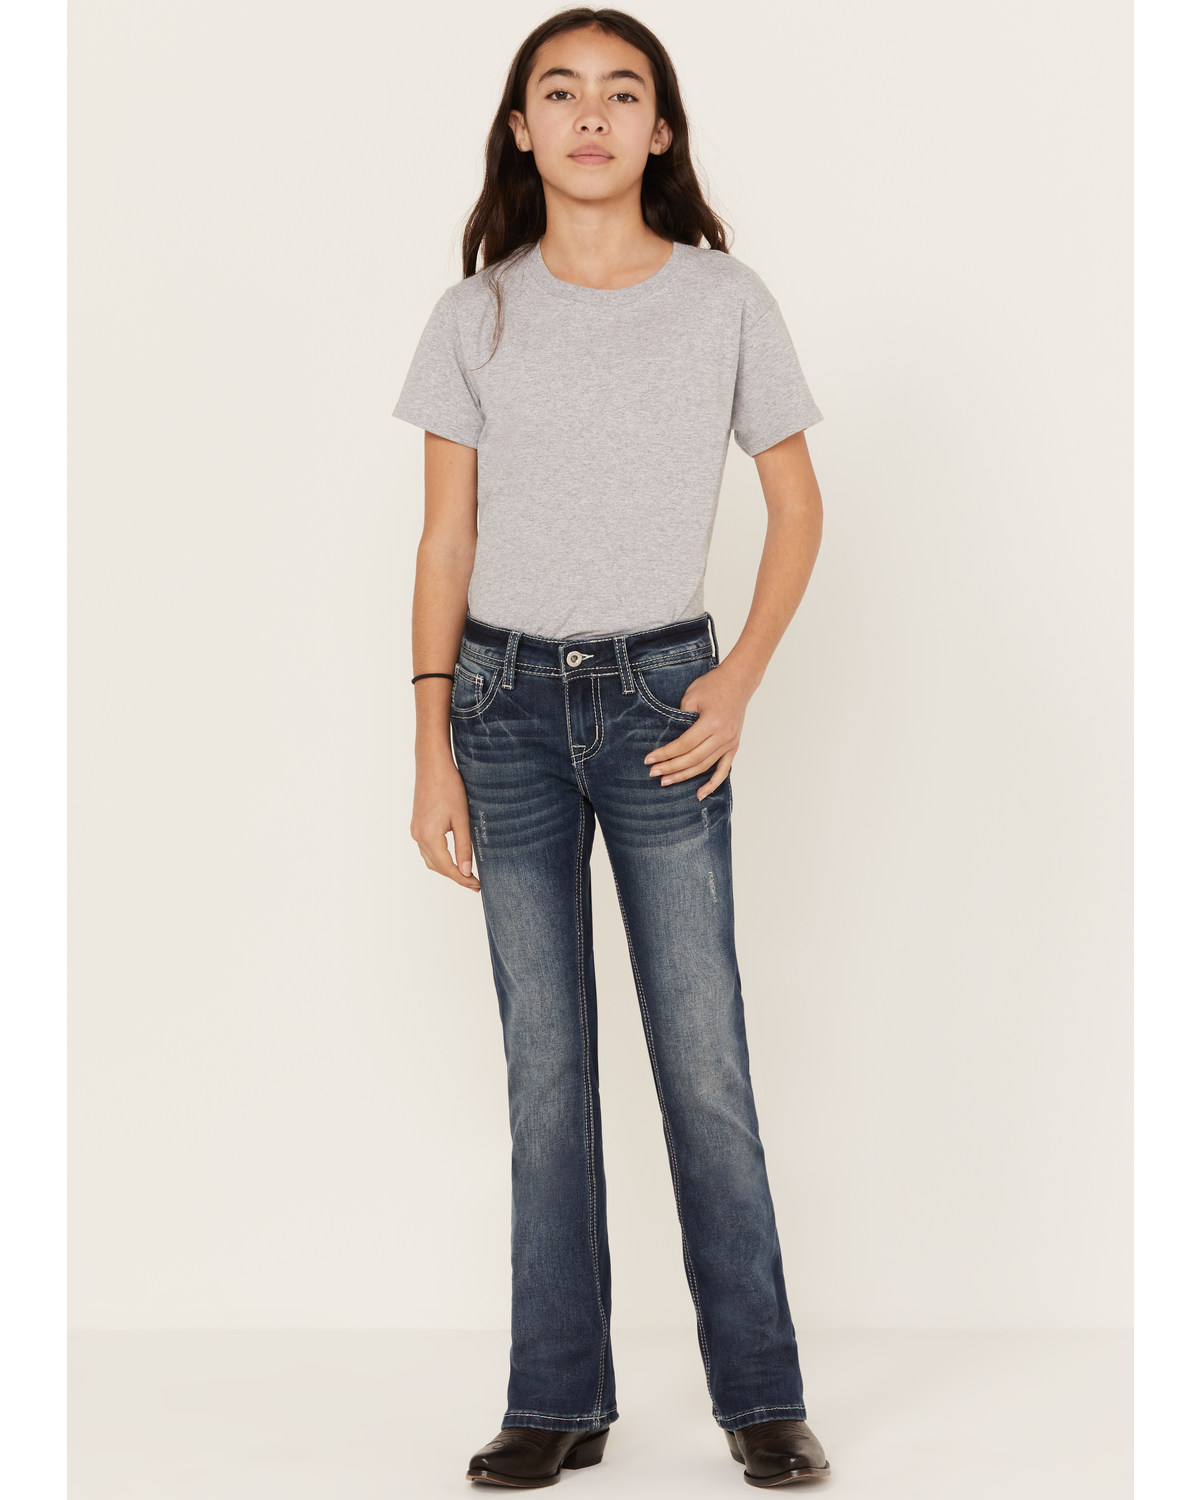 Grace LA Girls' Medium Wash Horse Outline Bootcut Jeans